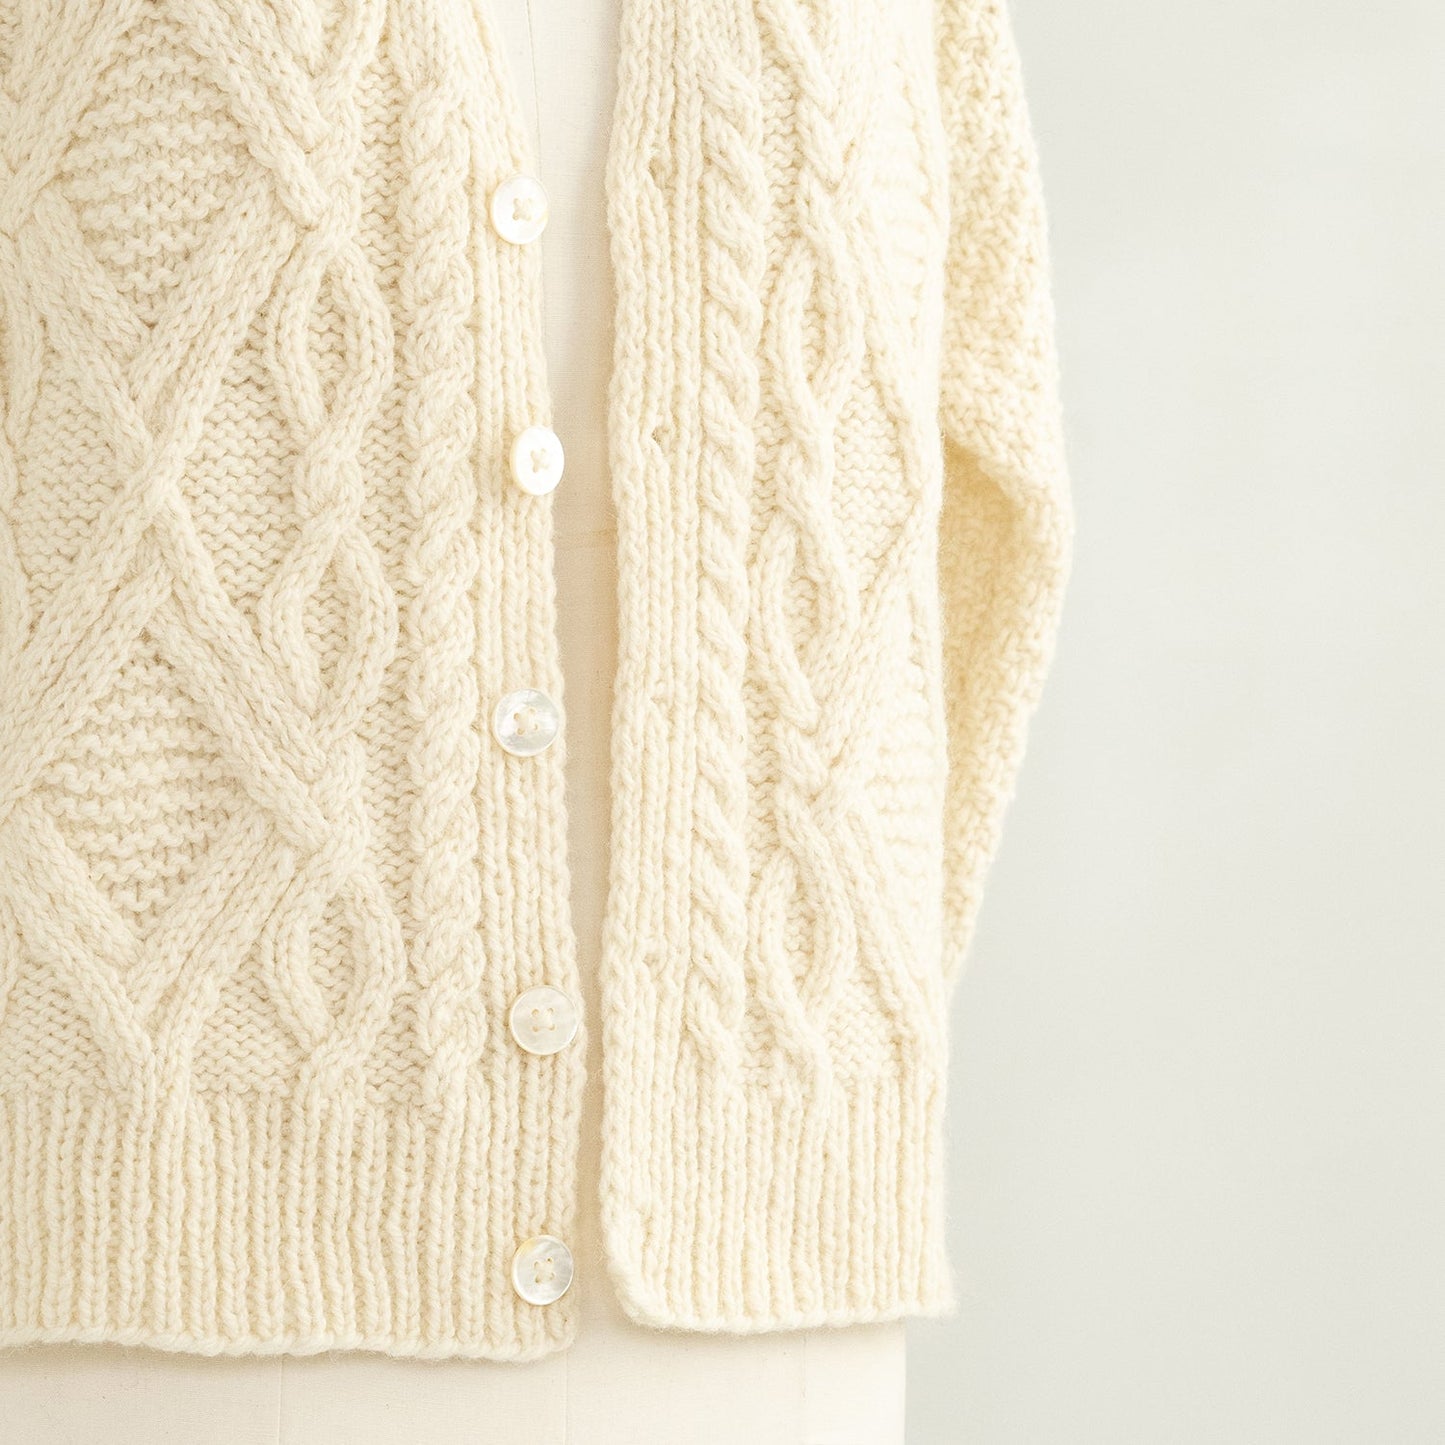 Kelbourne Woolens Winter Sweater Kit